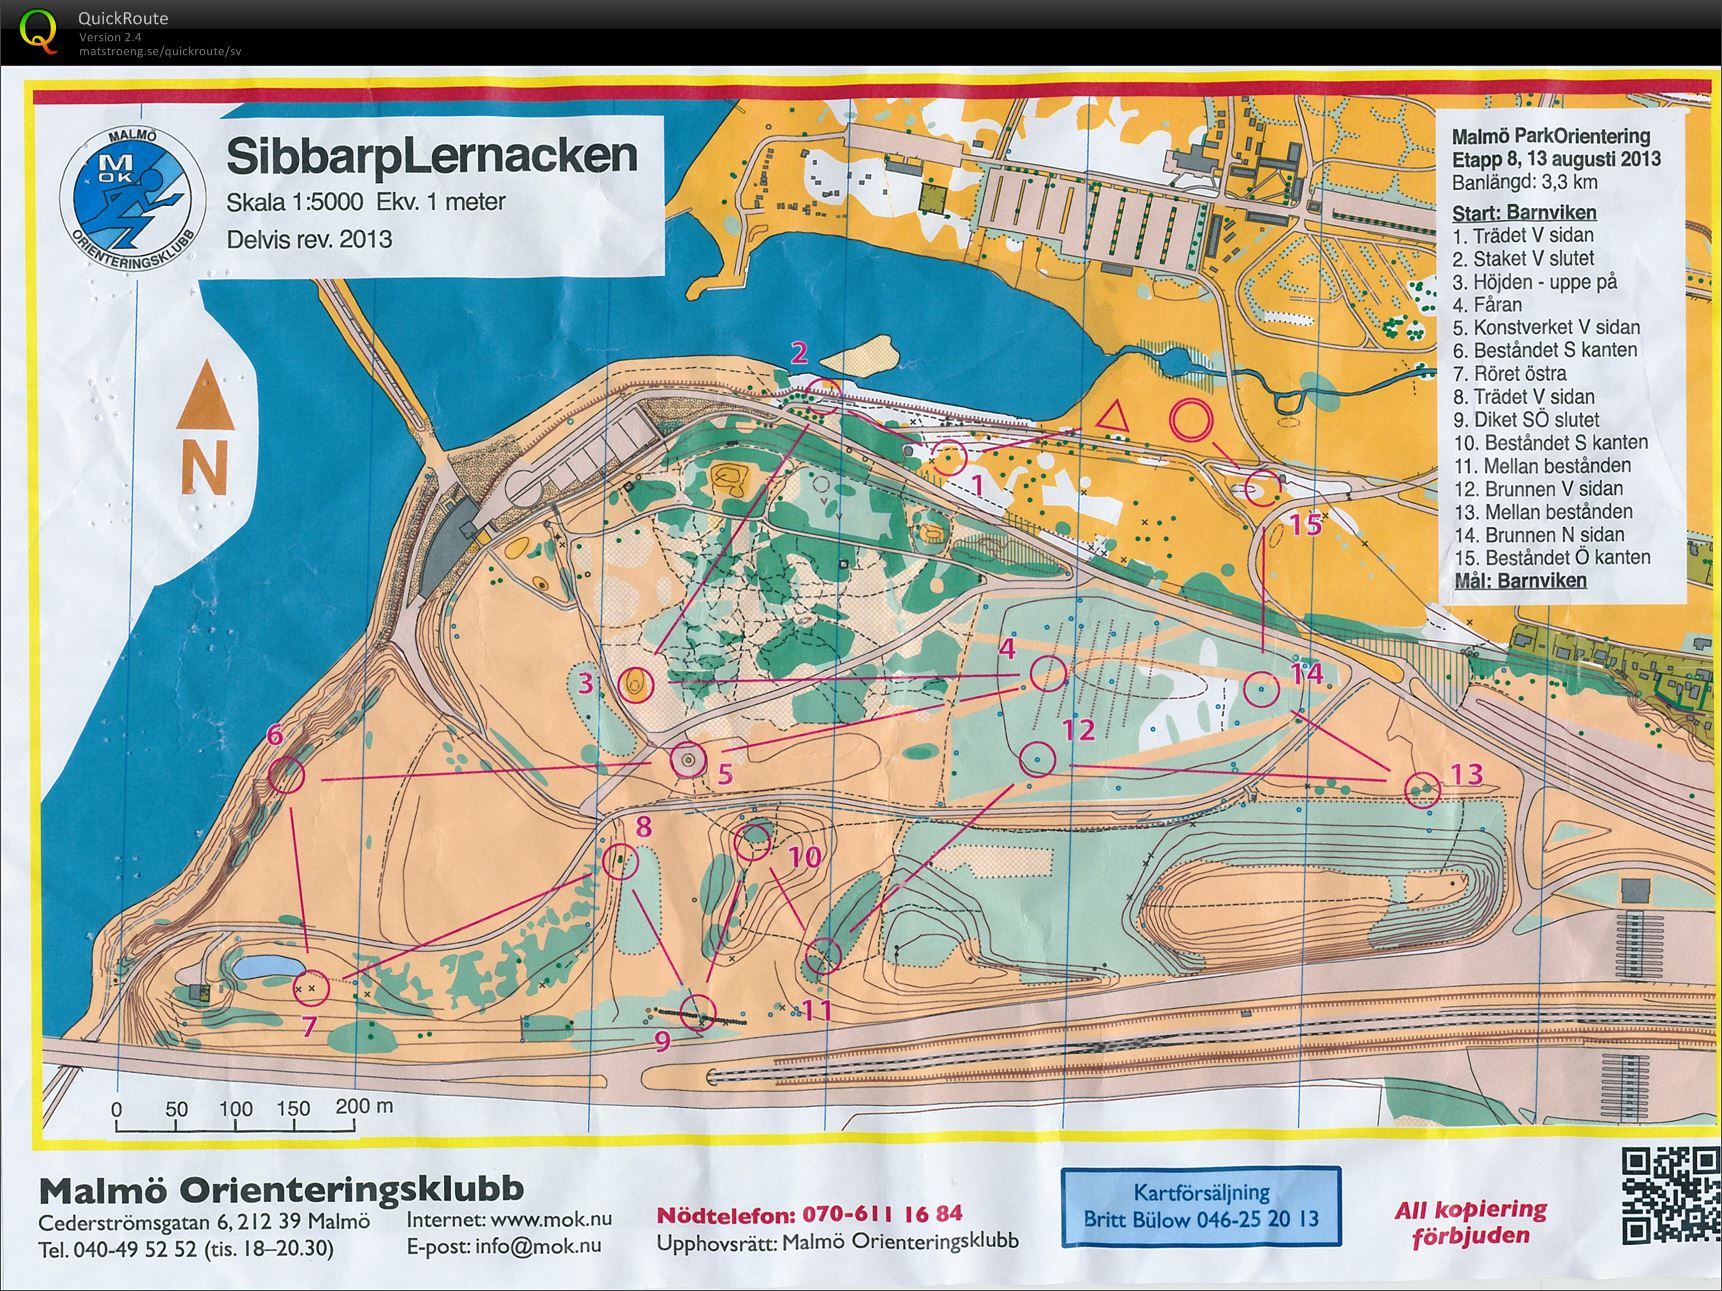 Malmö Parktävling, etapp 8 (13.08.2013)